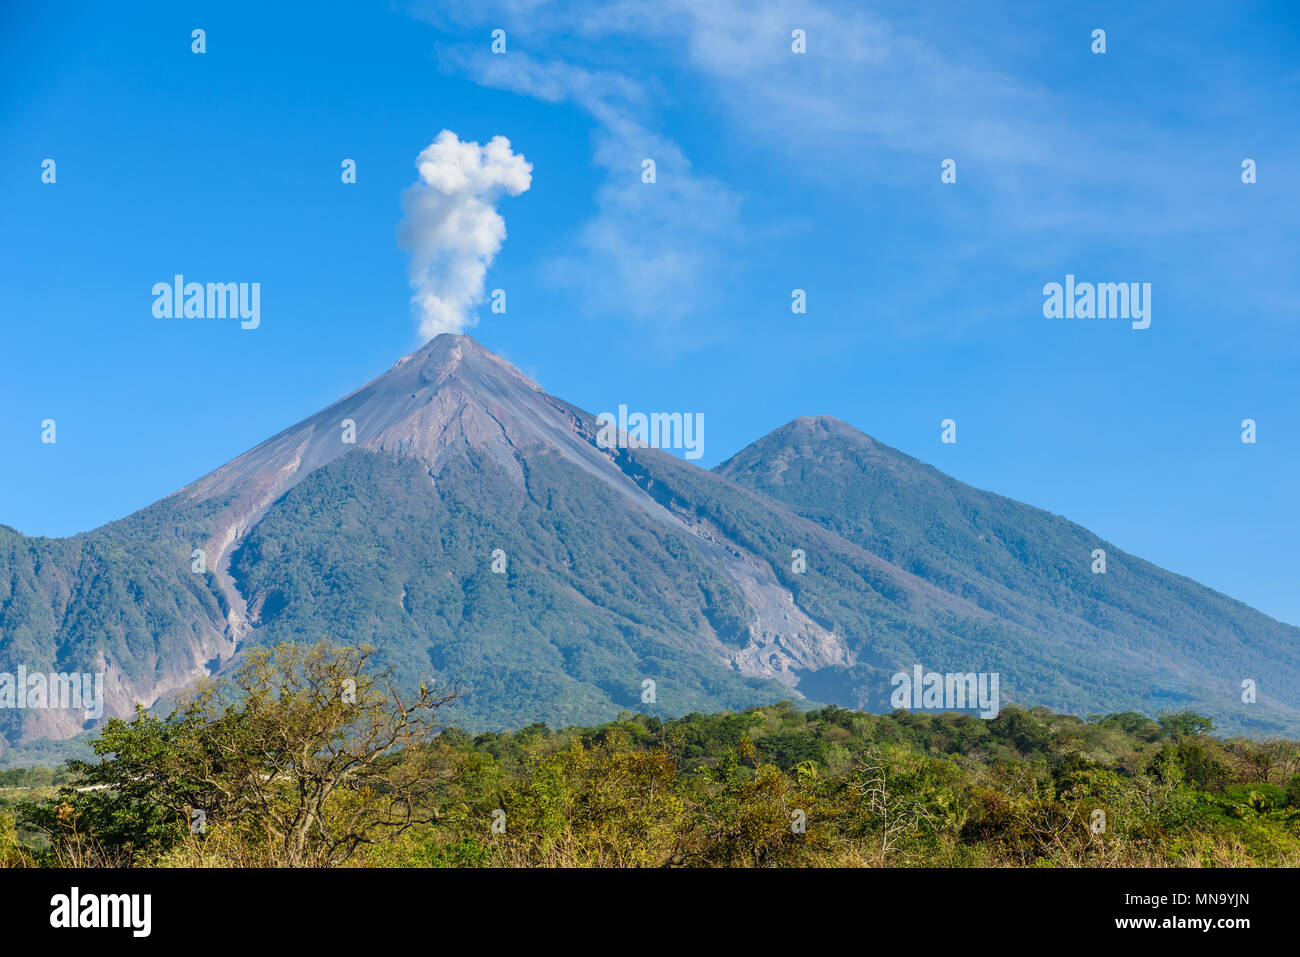 Super Vulkan El Fuego Wahrend Einer Eruption Auf Der Linken Und Die Acatenango Vulkan Auf Der Rechten Seite Ansicht Von Antigua Guatemala Stockfotografie Alamy